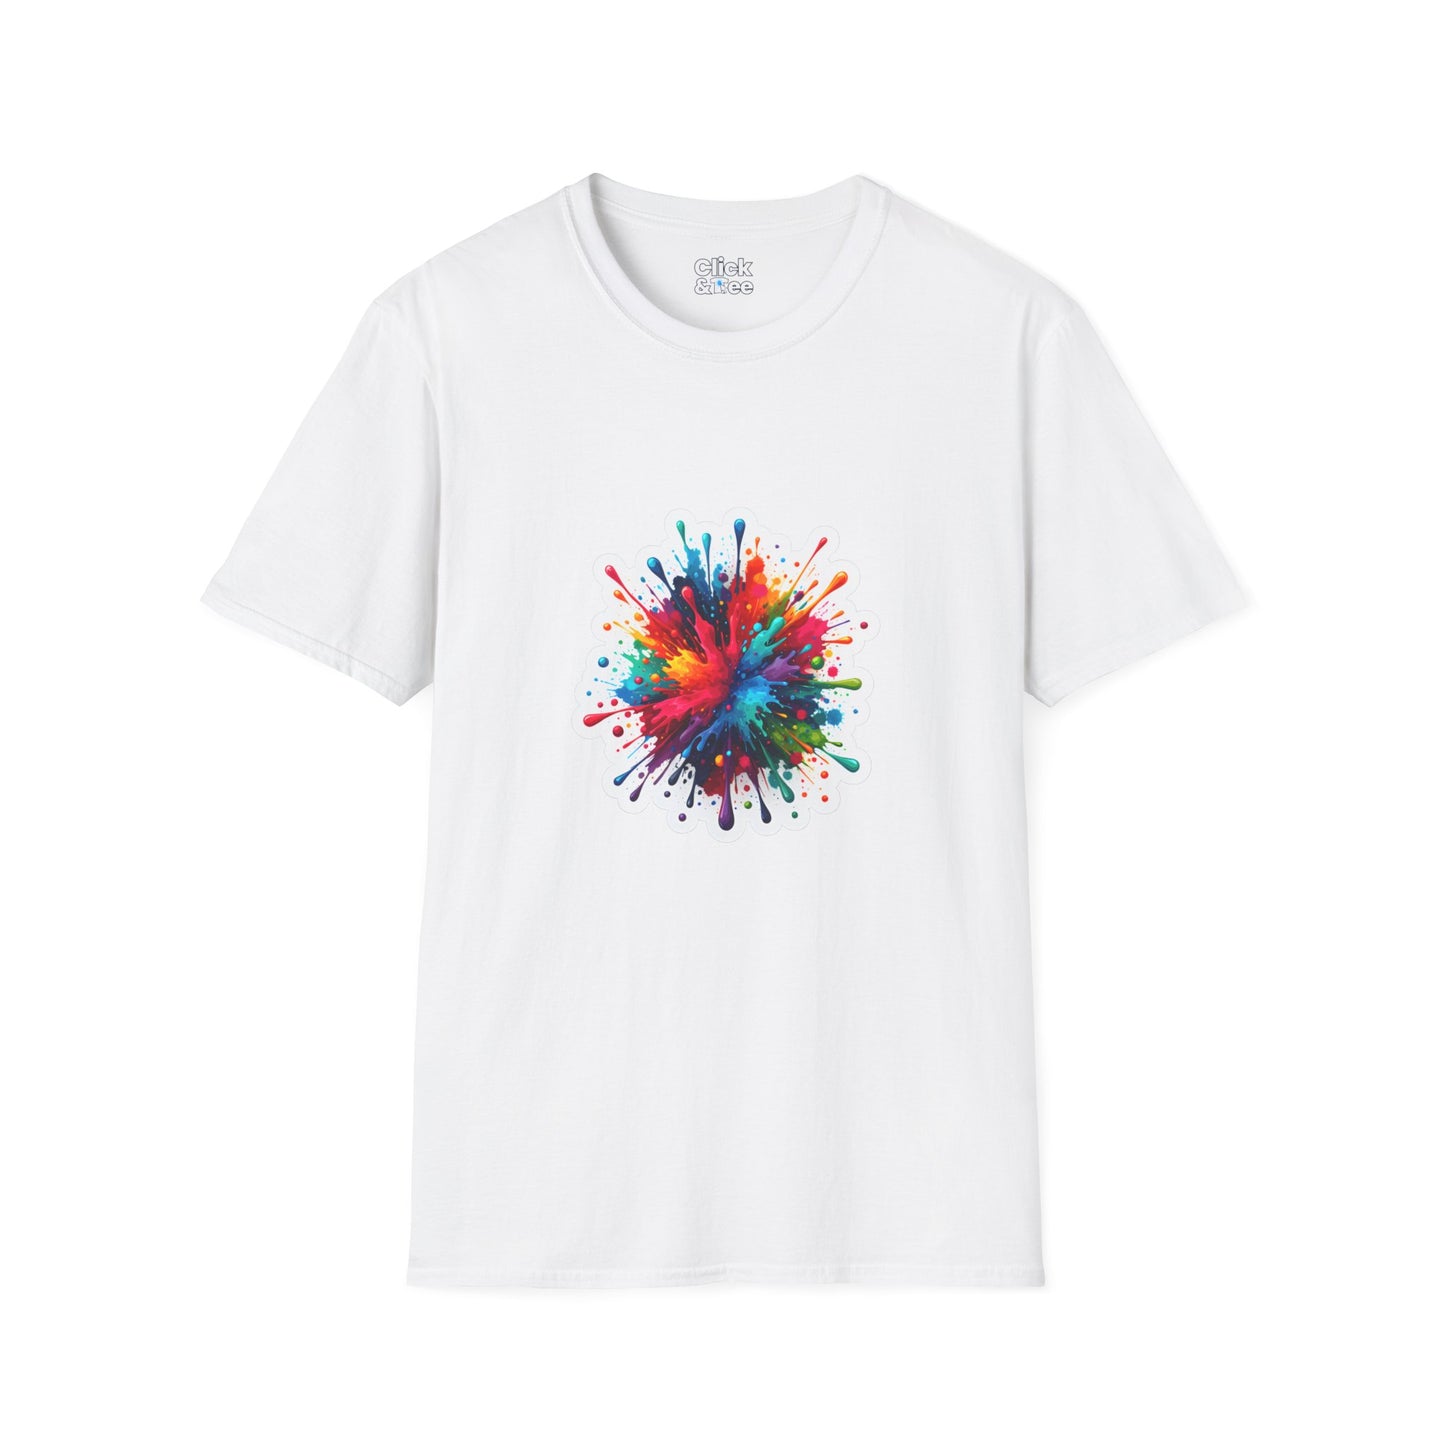 Color Splatter T-Shirt - Vibrant Splatter Paint Art Exploding in all directions - Color Splatter Style T-Shirt